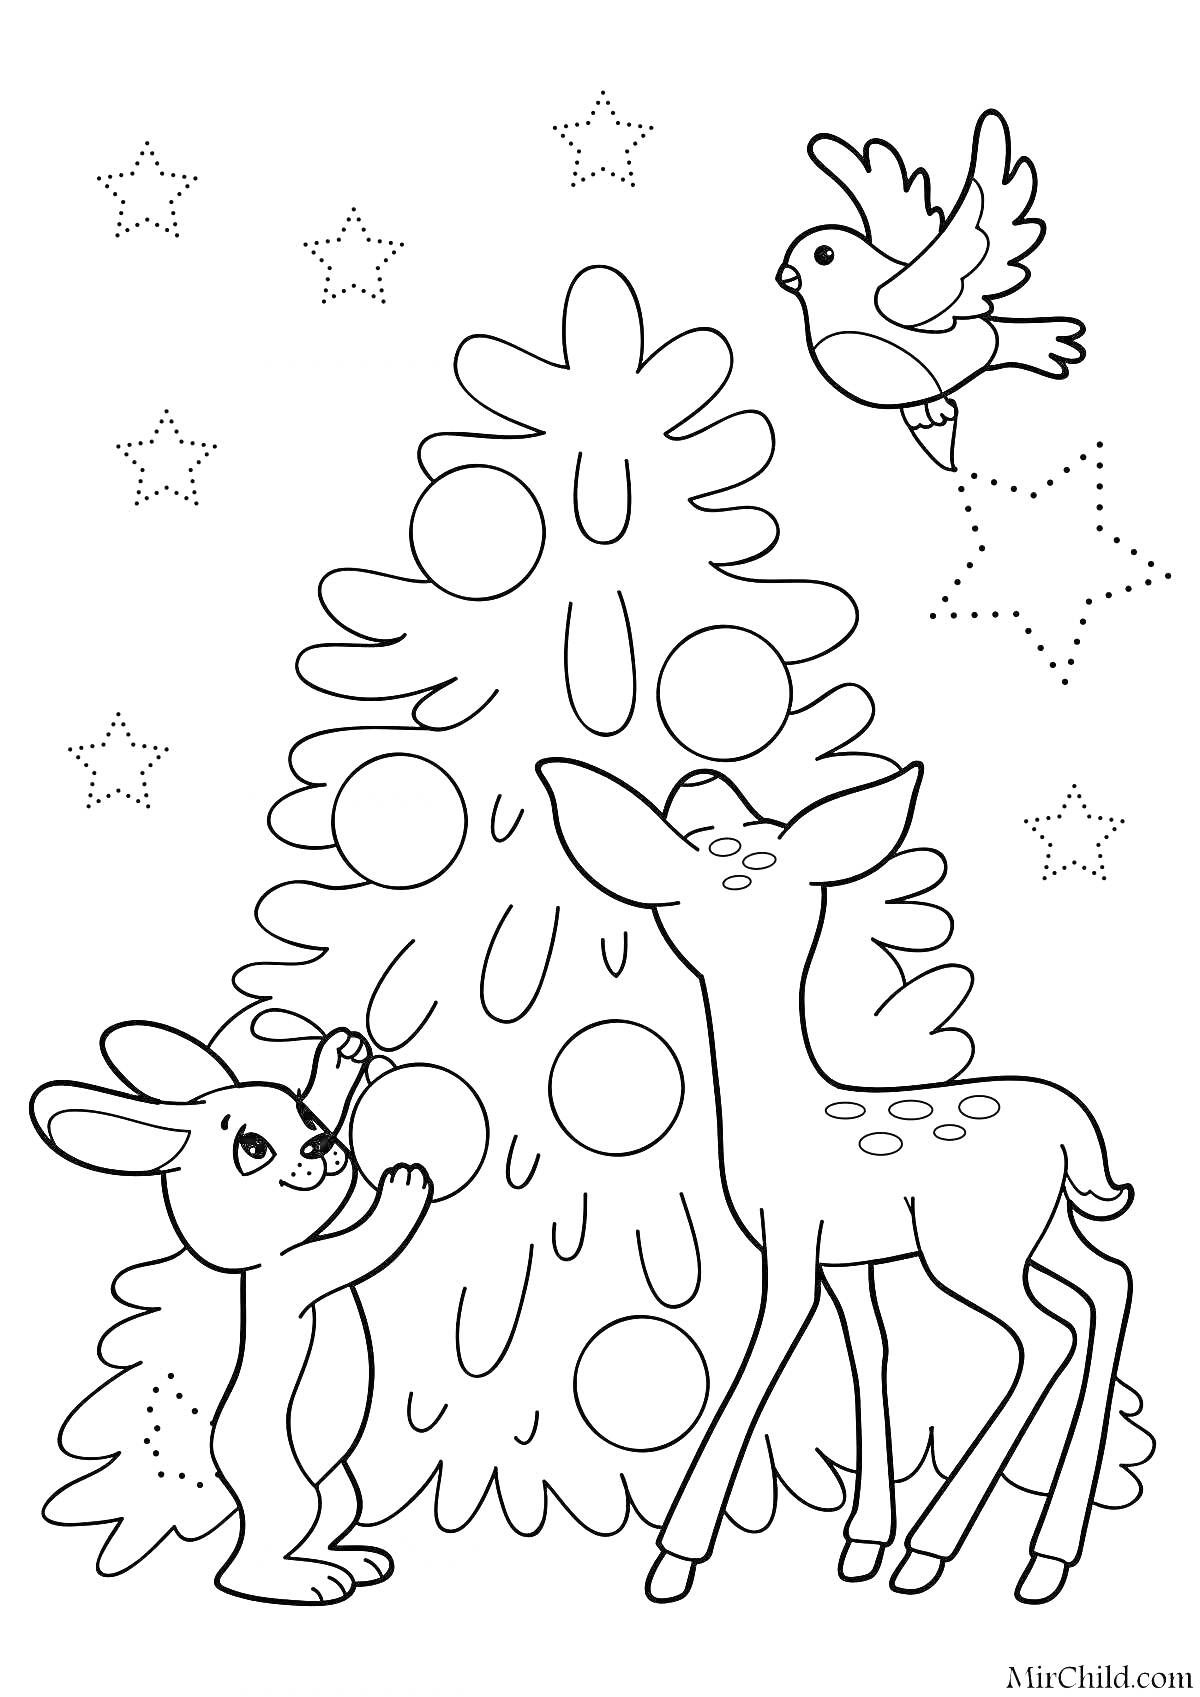 Раскраска Елка с зайчиком, олененком, и птицей, окруженная звездами